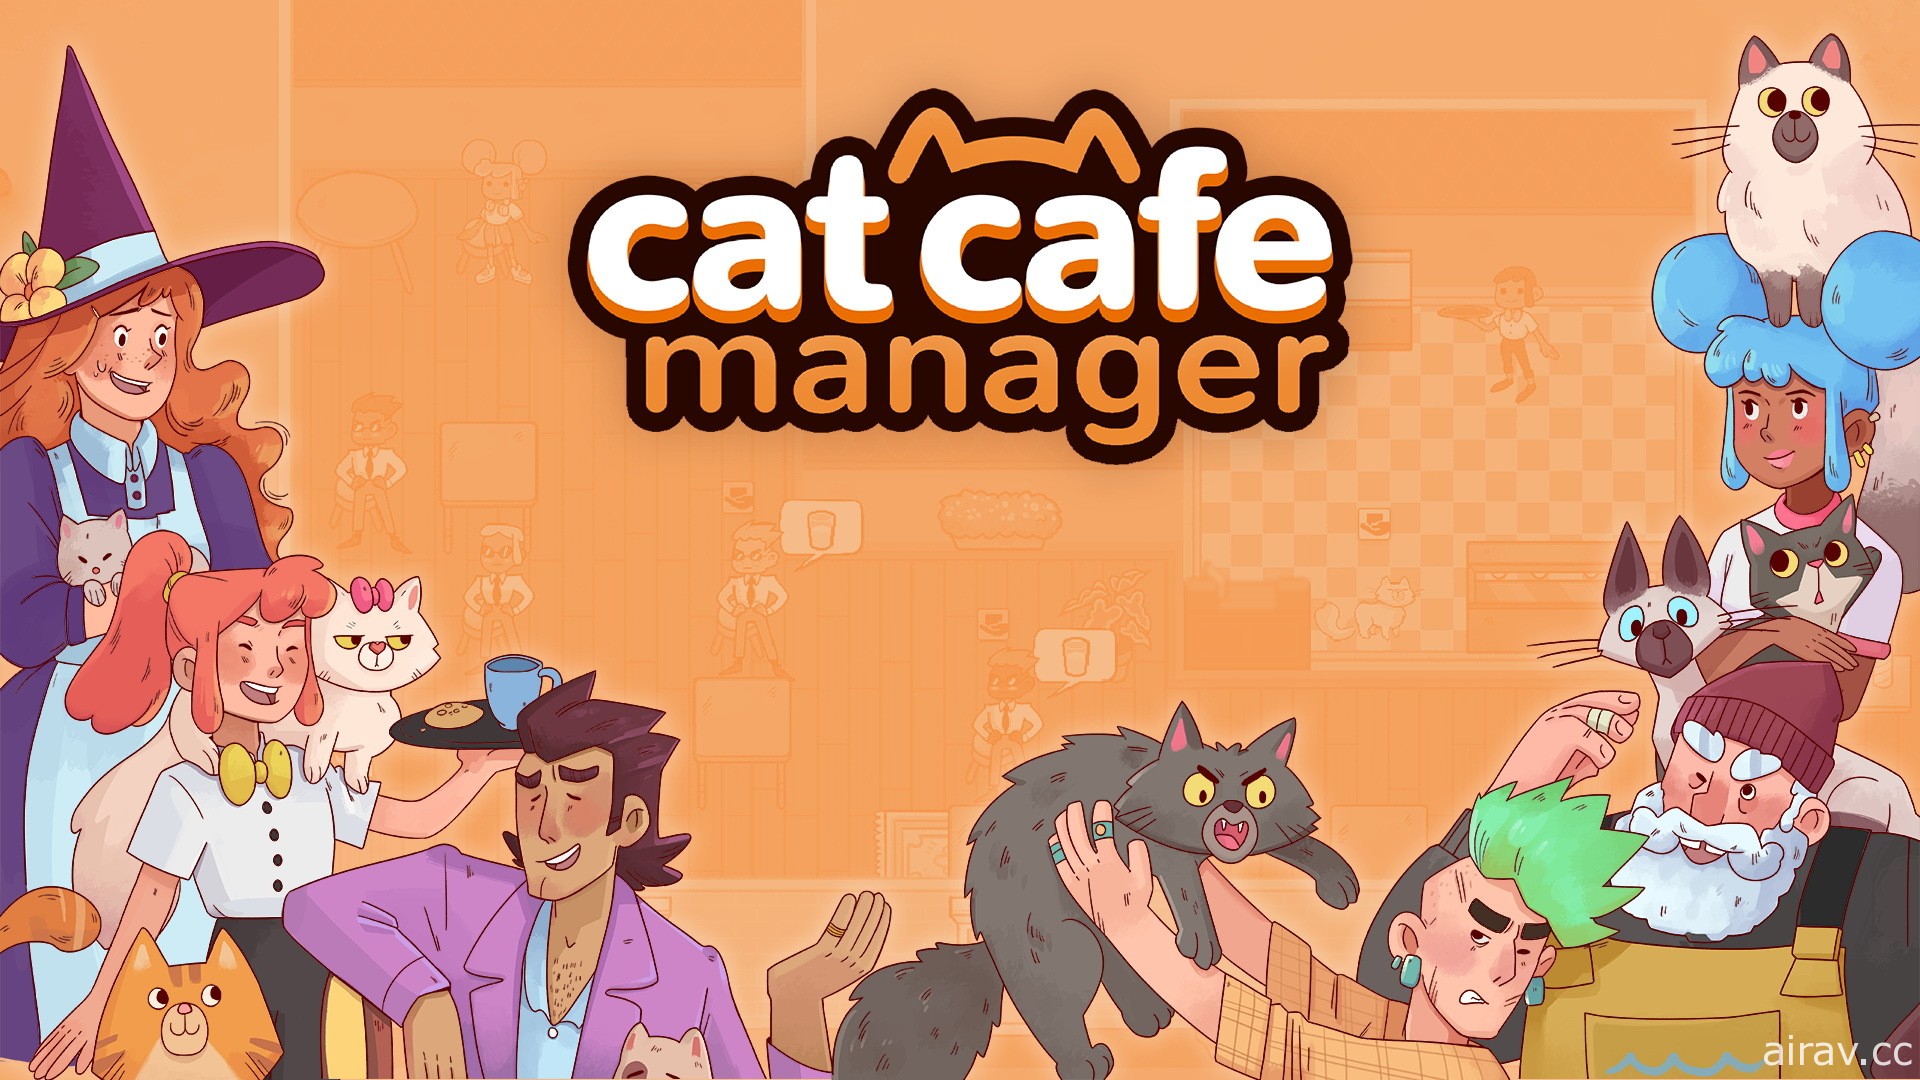 荷兰团队新作《猫咪咖啡馆经理》今秋问世 经营咖啡馆并照顾可爱流浪猫